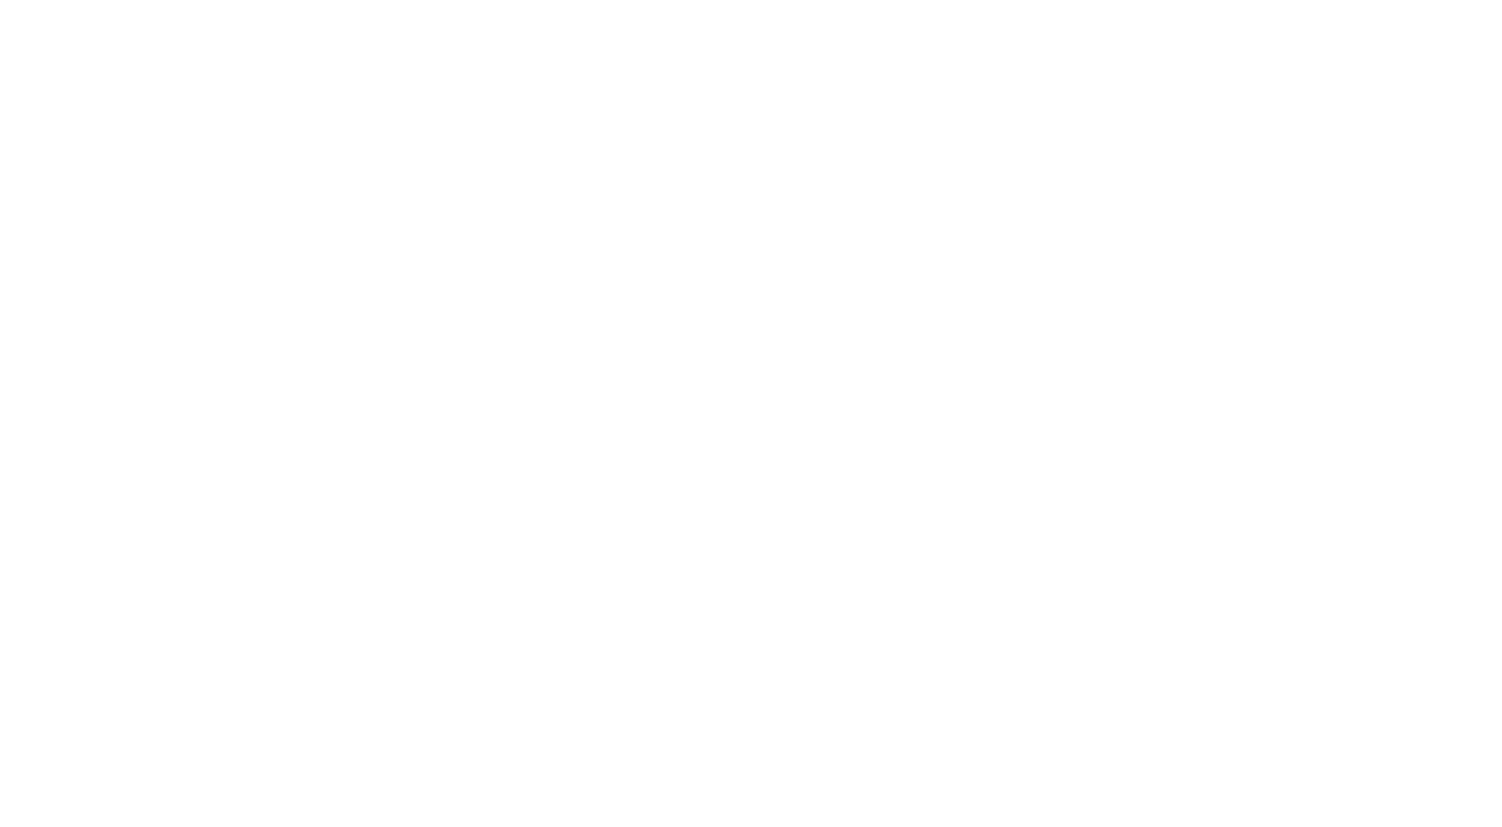 wop-studio